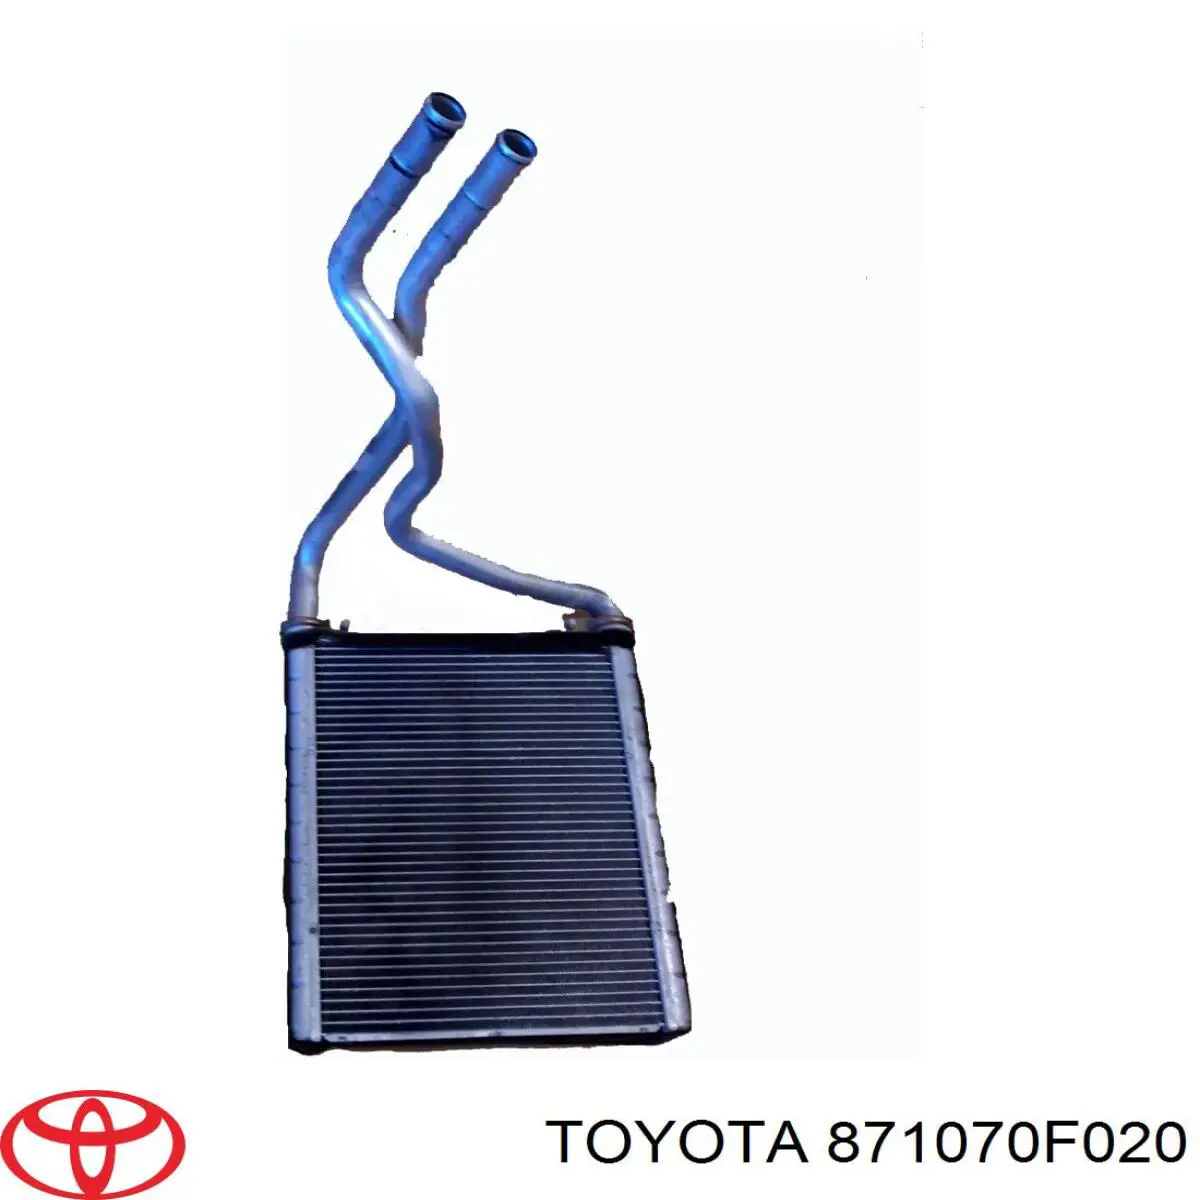 Цена без доставки. больше предложений на нашем сайте на Toyota Corolla VERSO 